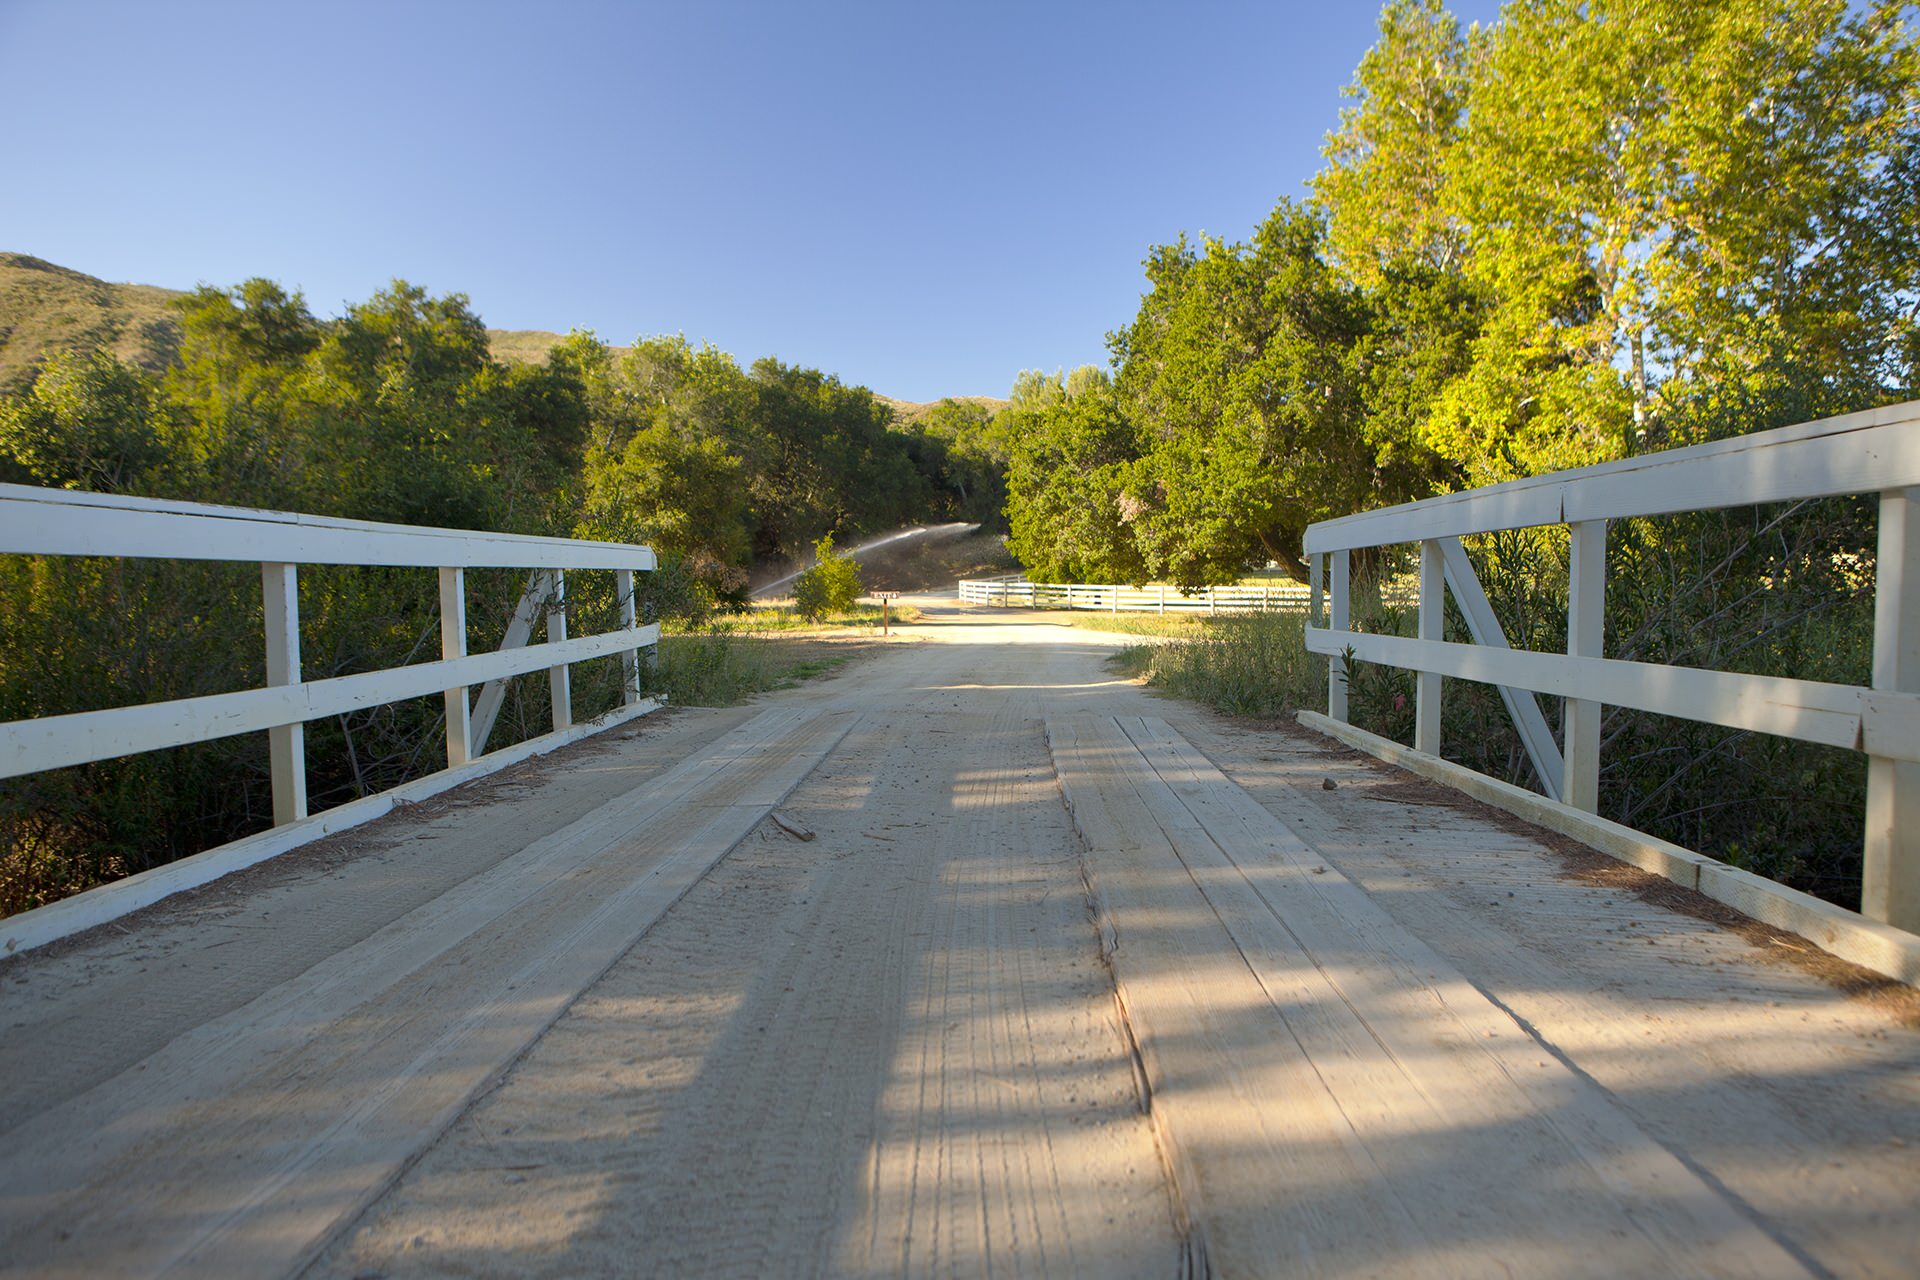 Creek Bridge - South View